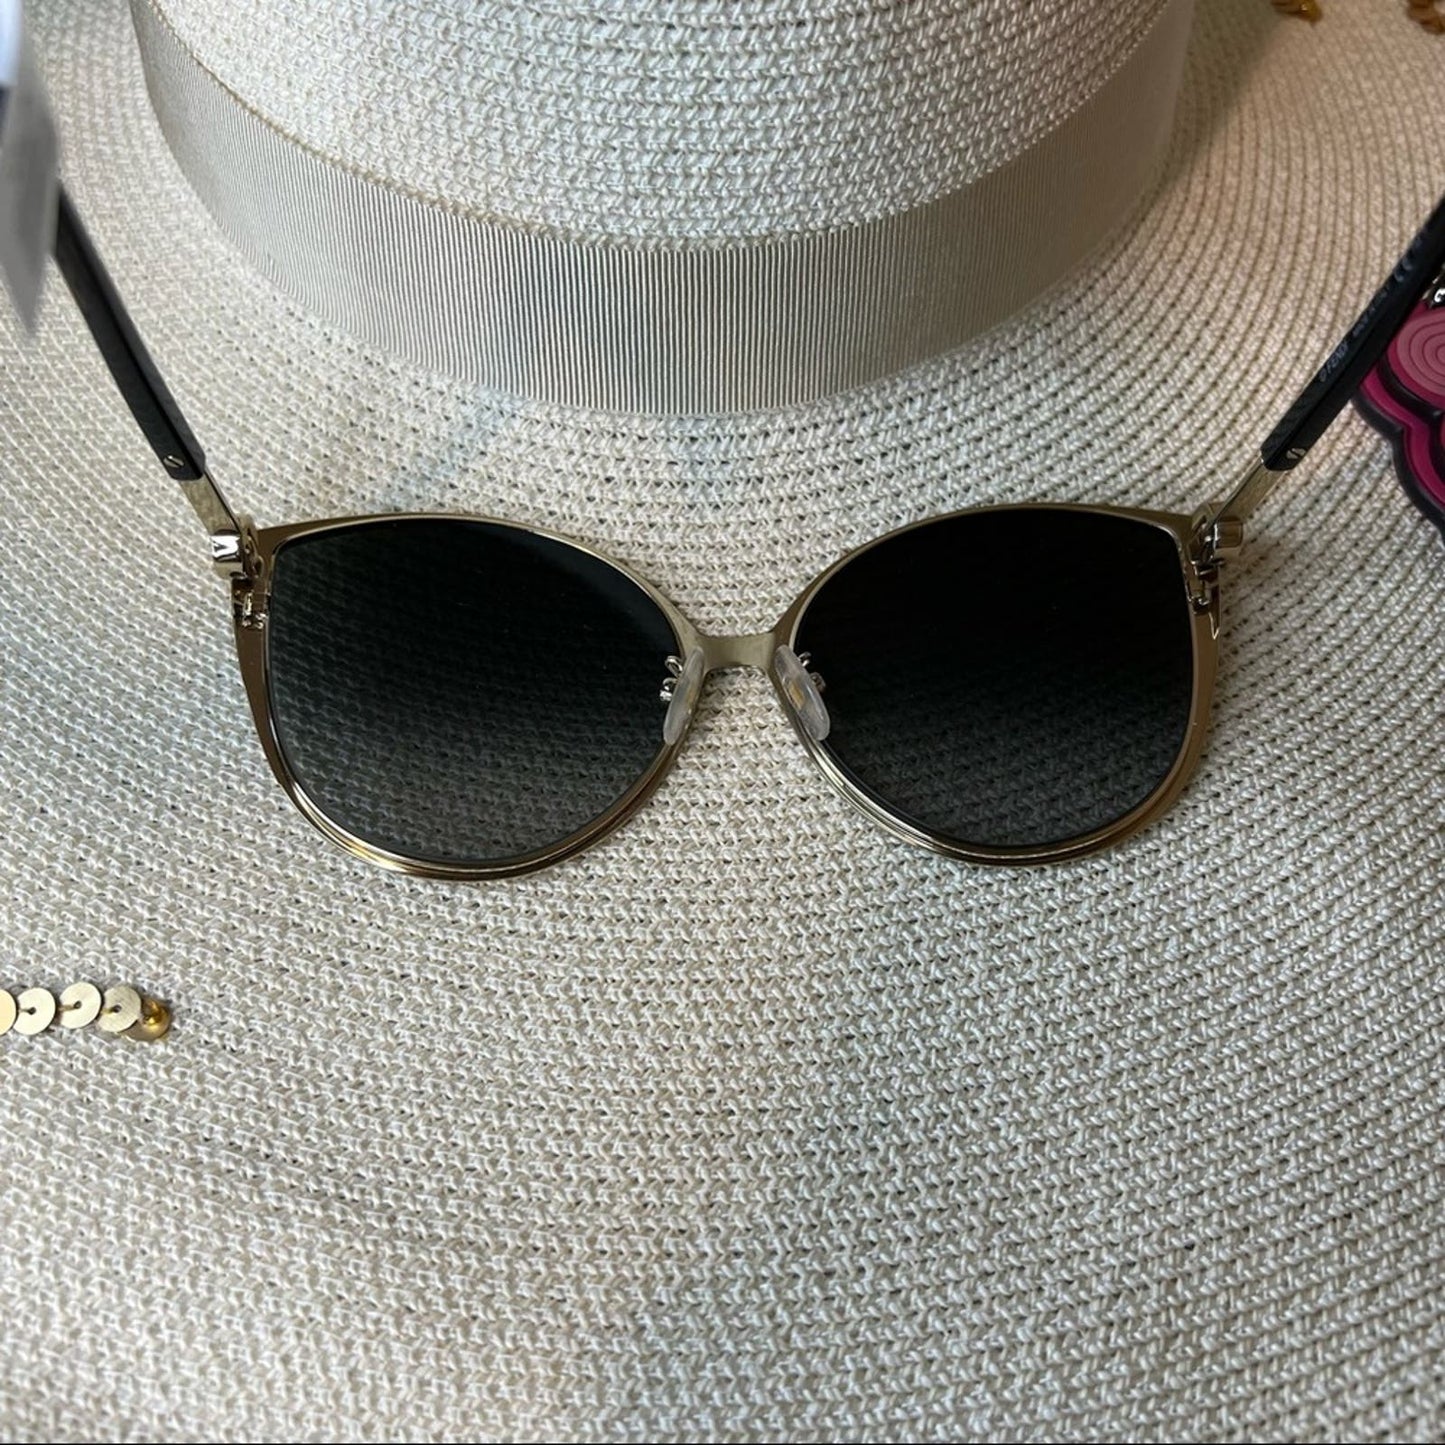 Fendi Black Cat Eye Sunglasses w/ Gold Details & Gray Gradient Lenses